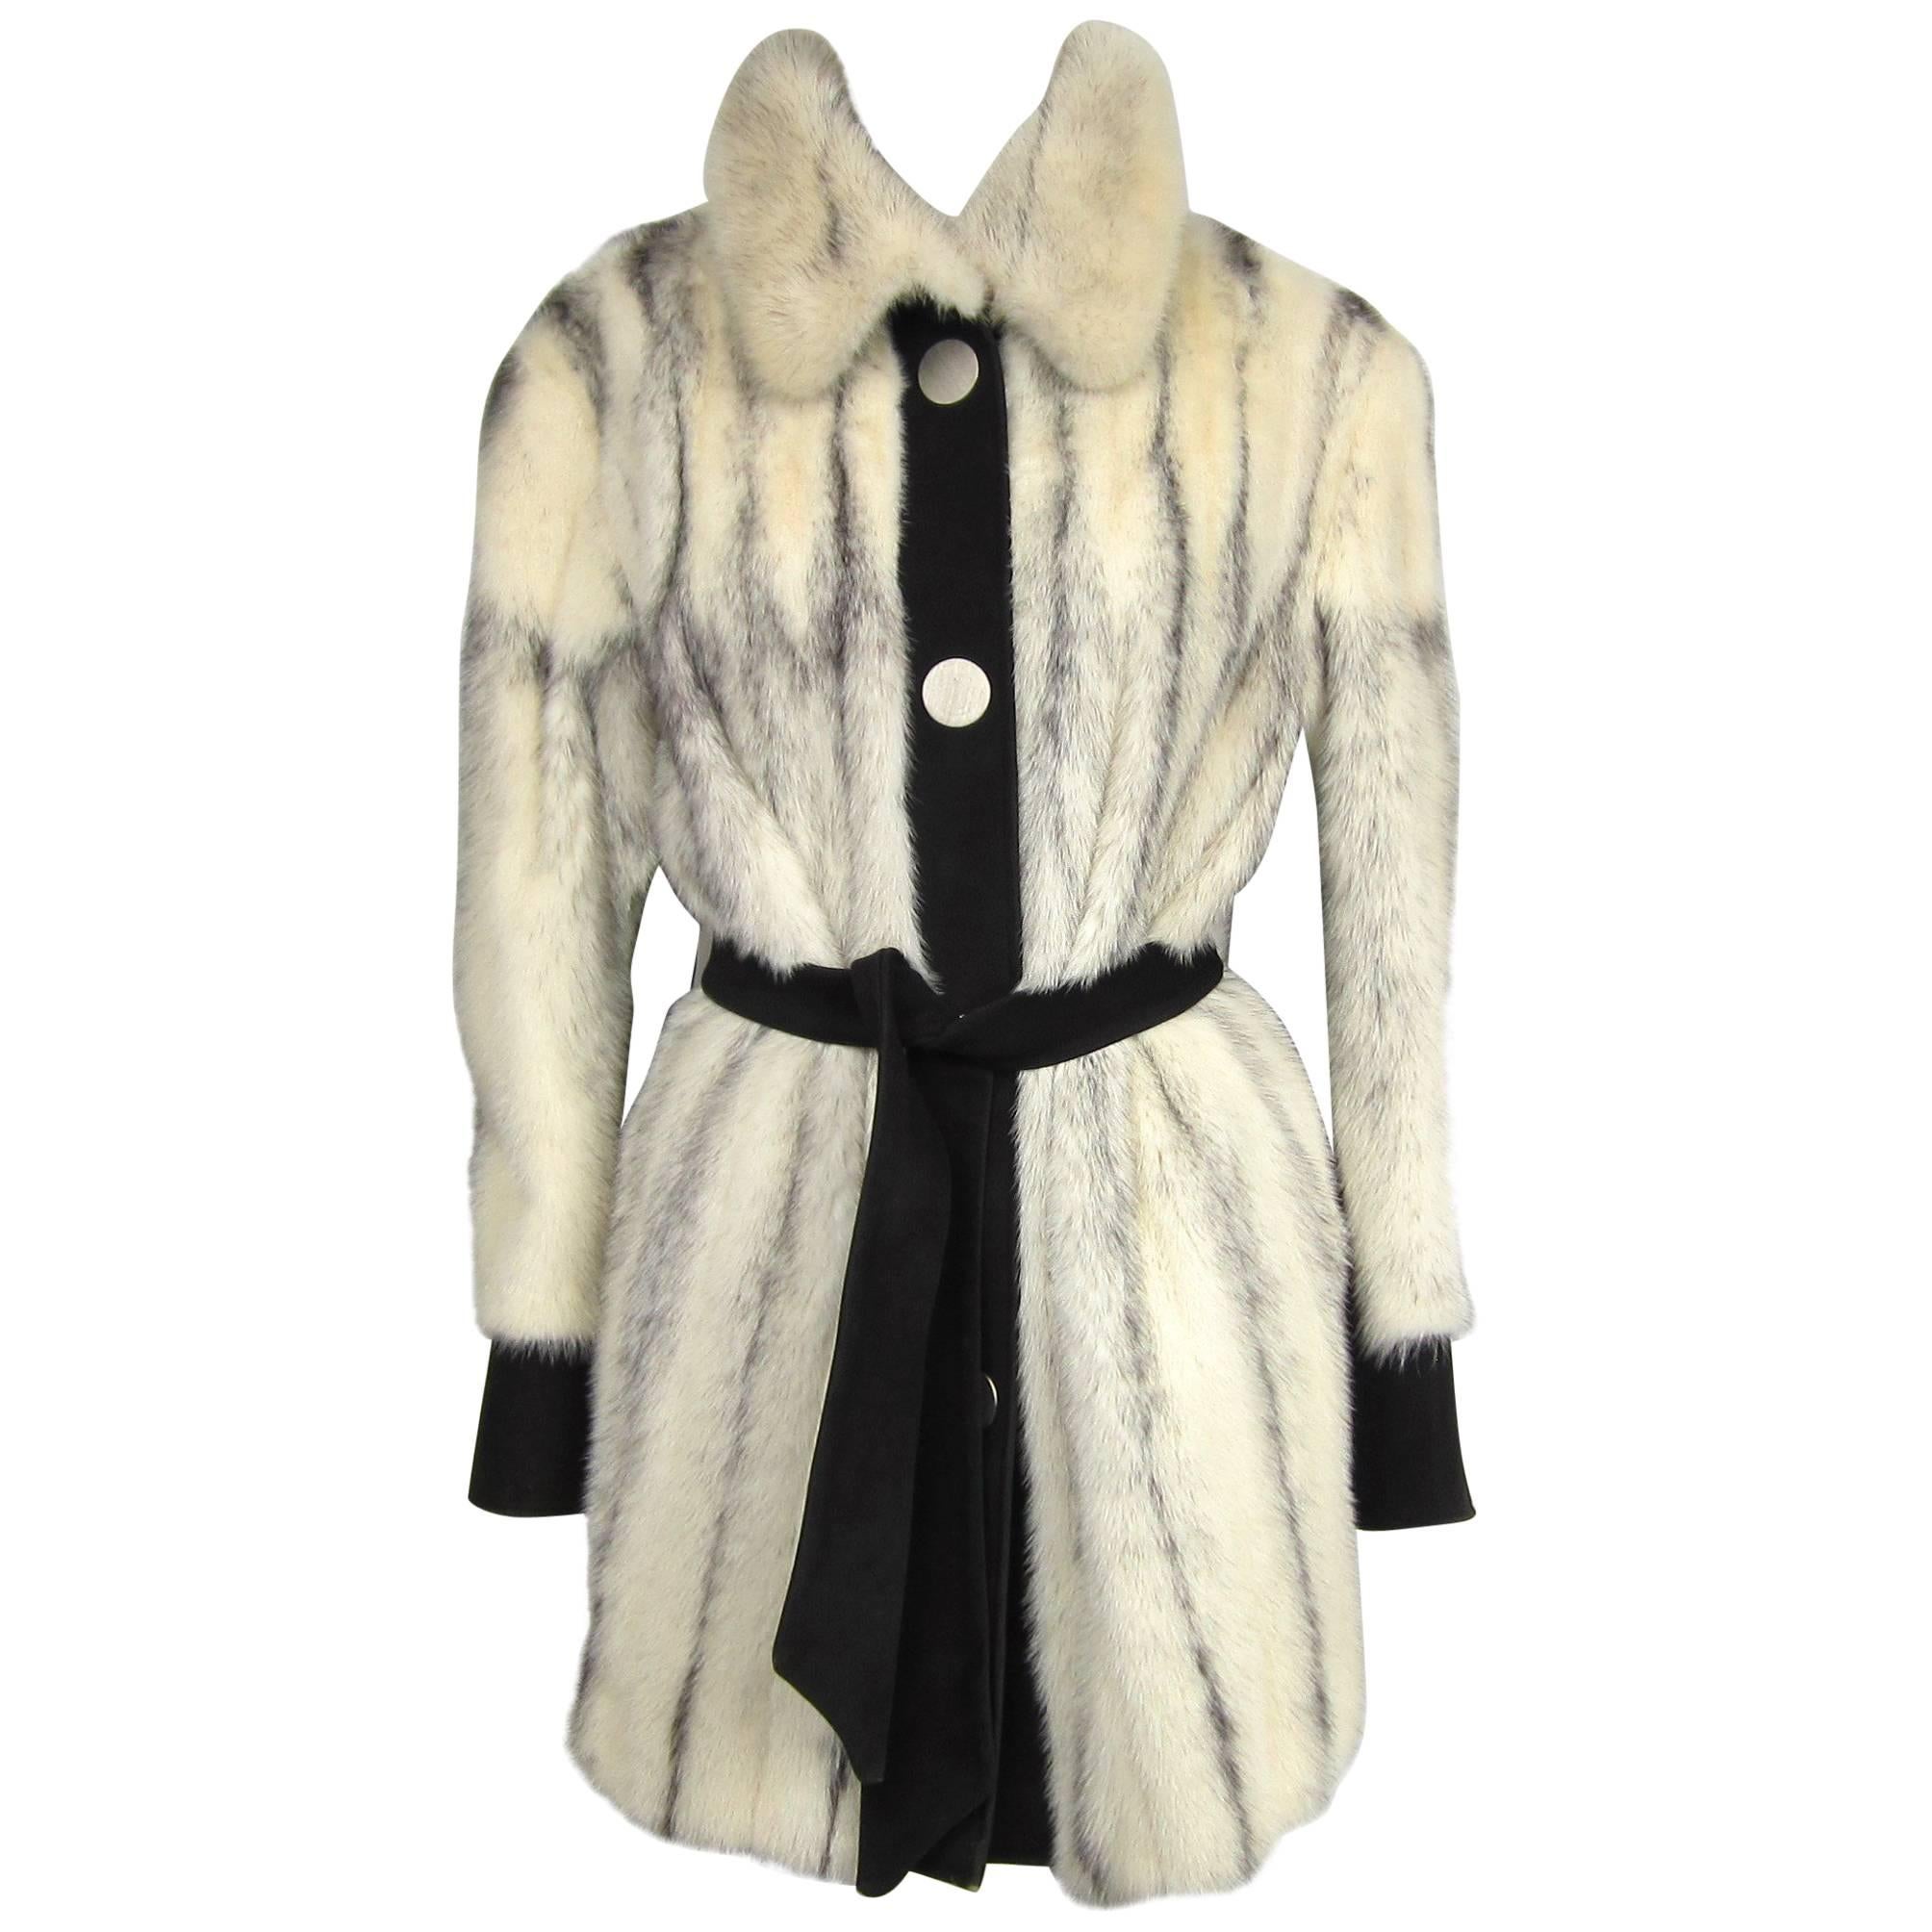  Black Cross Mink Fur Jacket / Suede Med - Large  For Sale